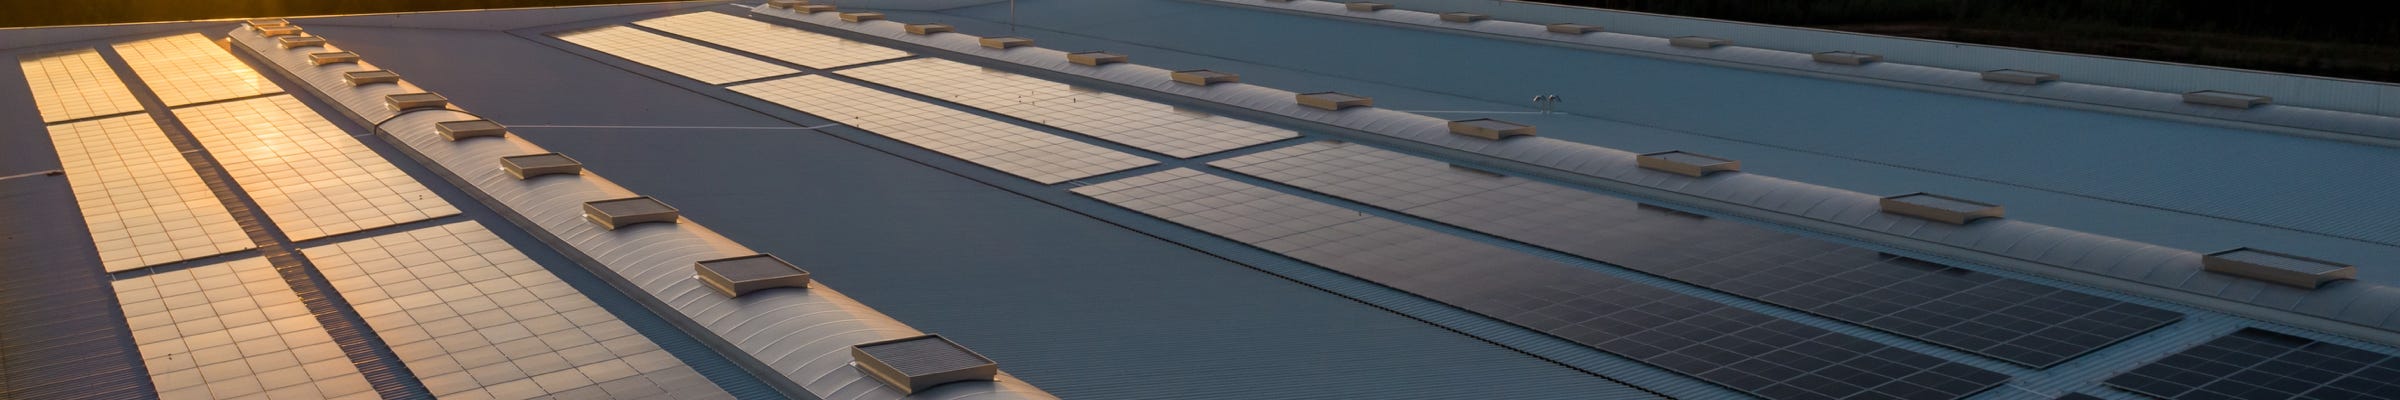 En Plasticos Ferrando estamos muy comprometidos con el ahorro y la eficiencia energética, por ello mismo, disponemos de una instalación de placas solares para el autoconsumo de energía, la cual representa en si un importante ahorro energético. 